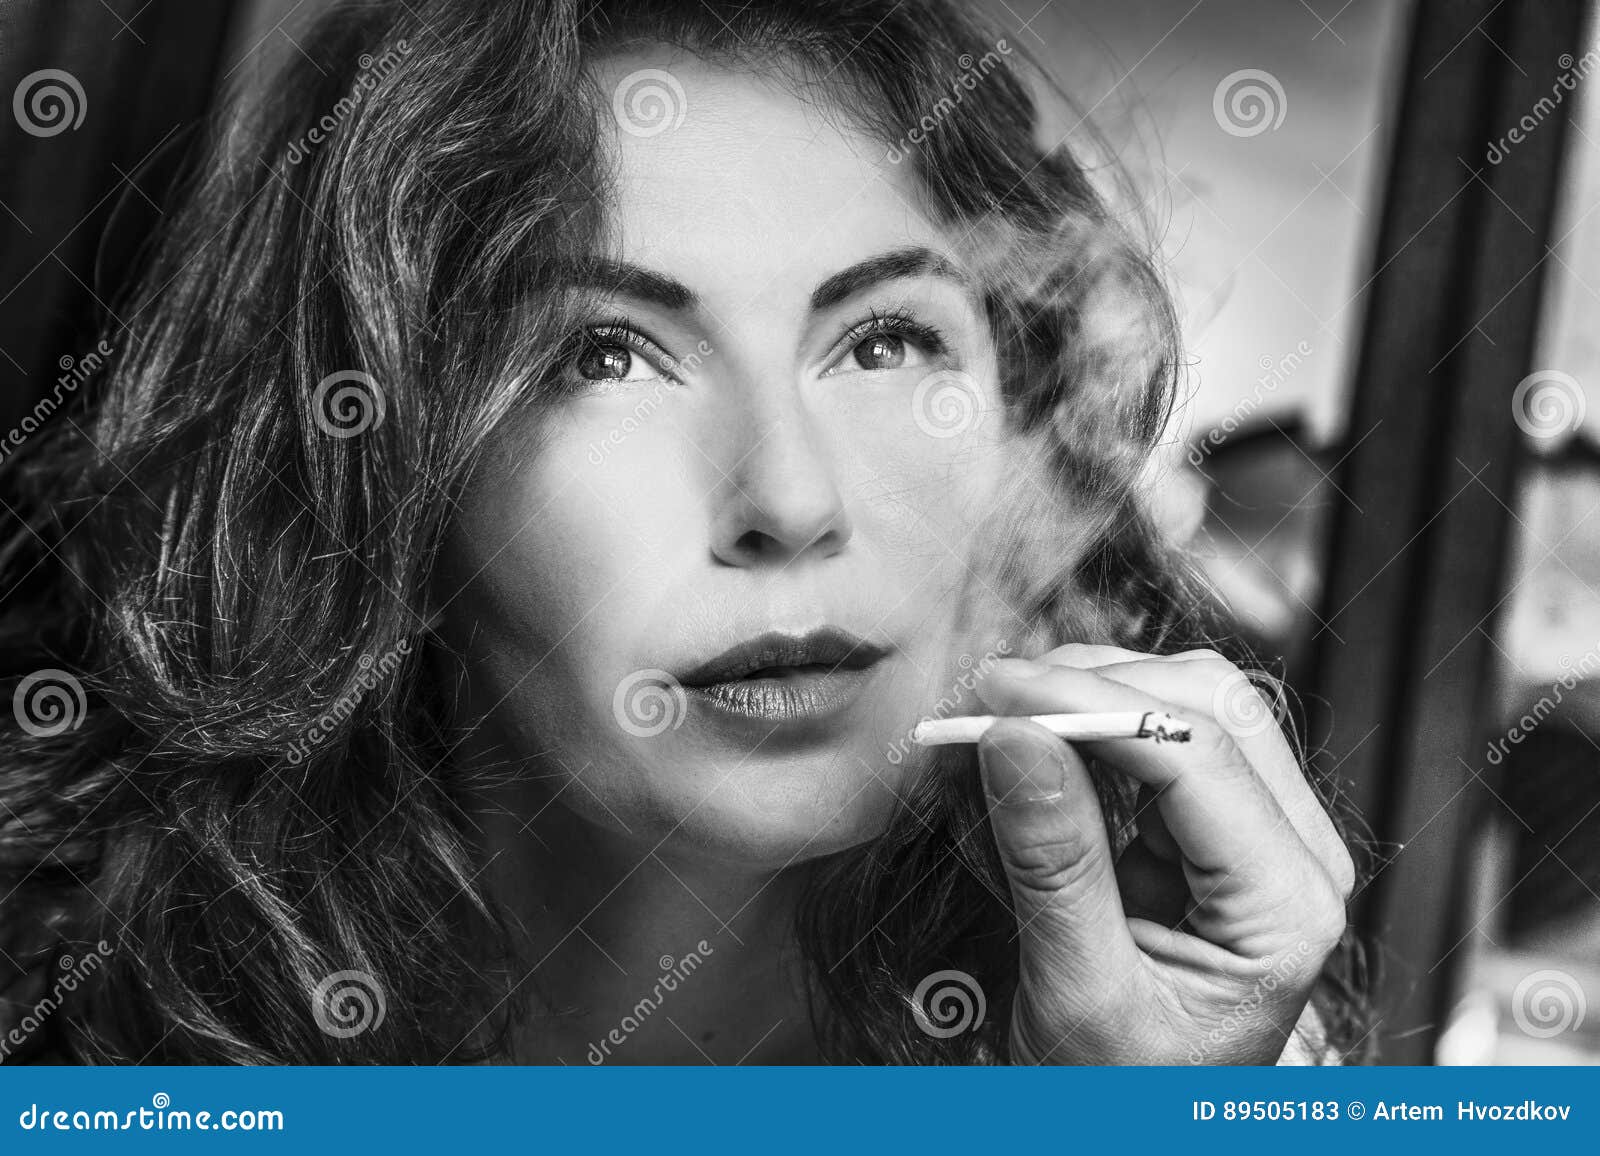 抽烟的红唇美女性感图片桌面壁纸 -桌面天下（Desktx.com）